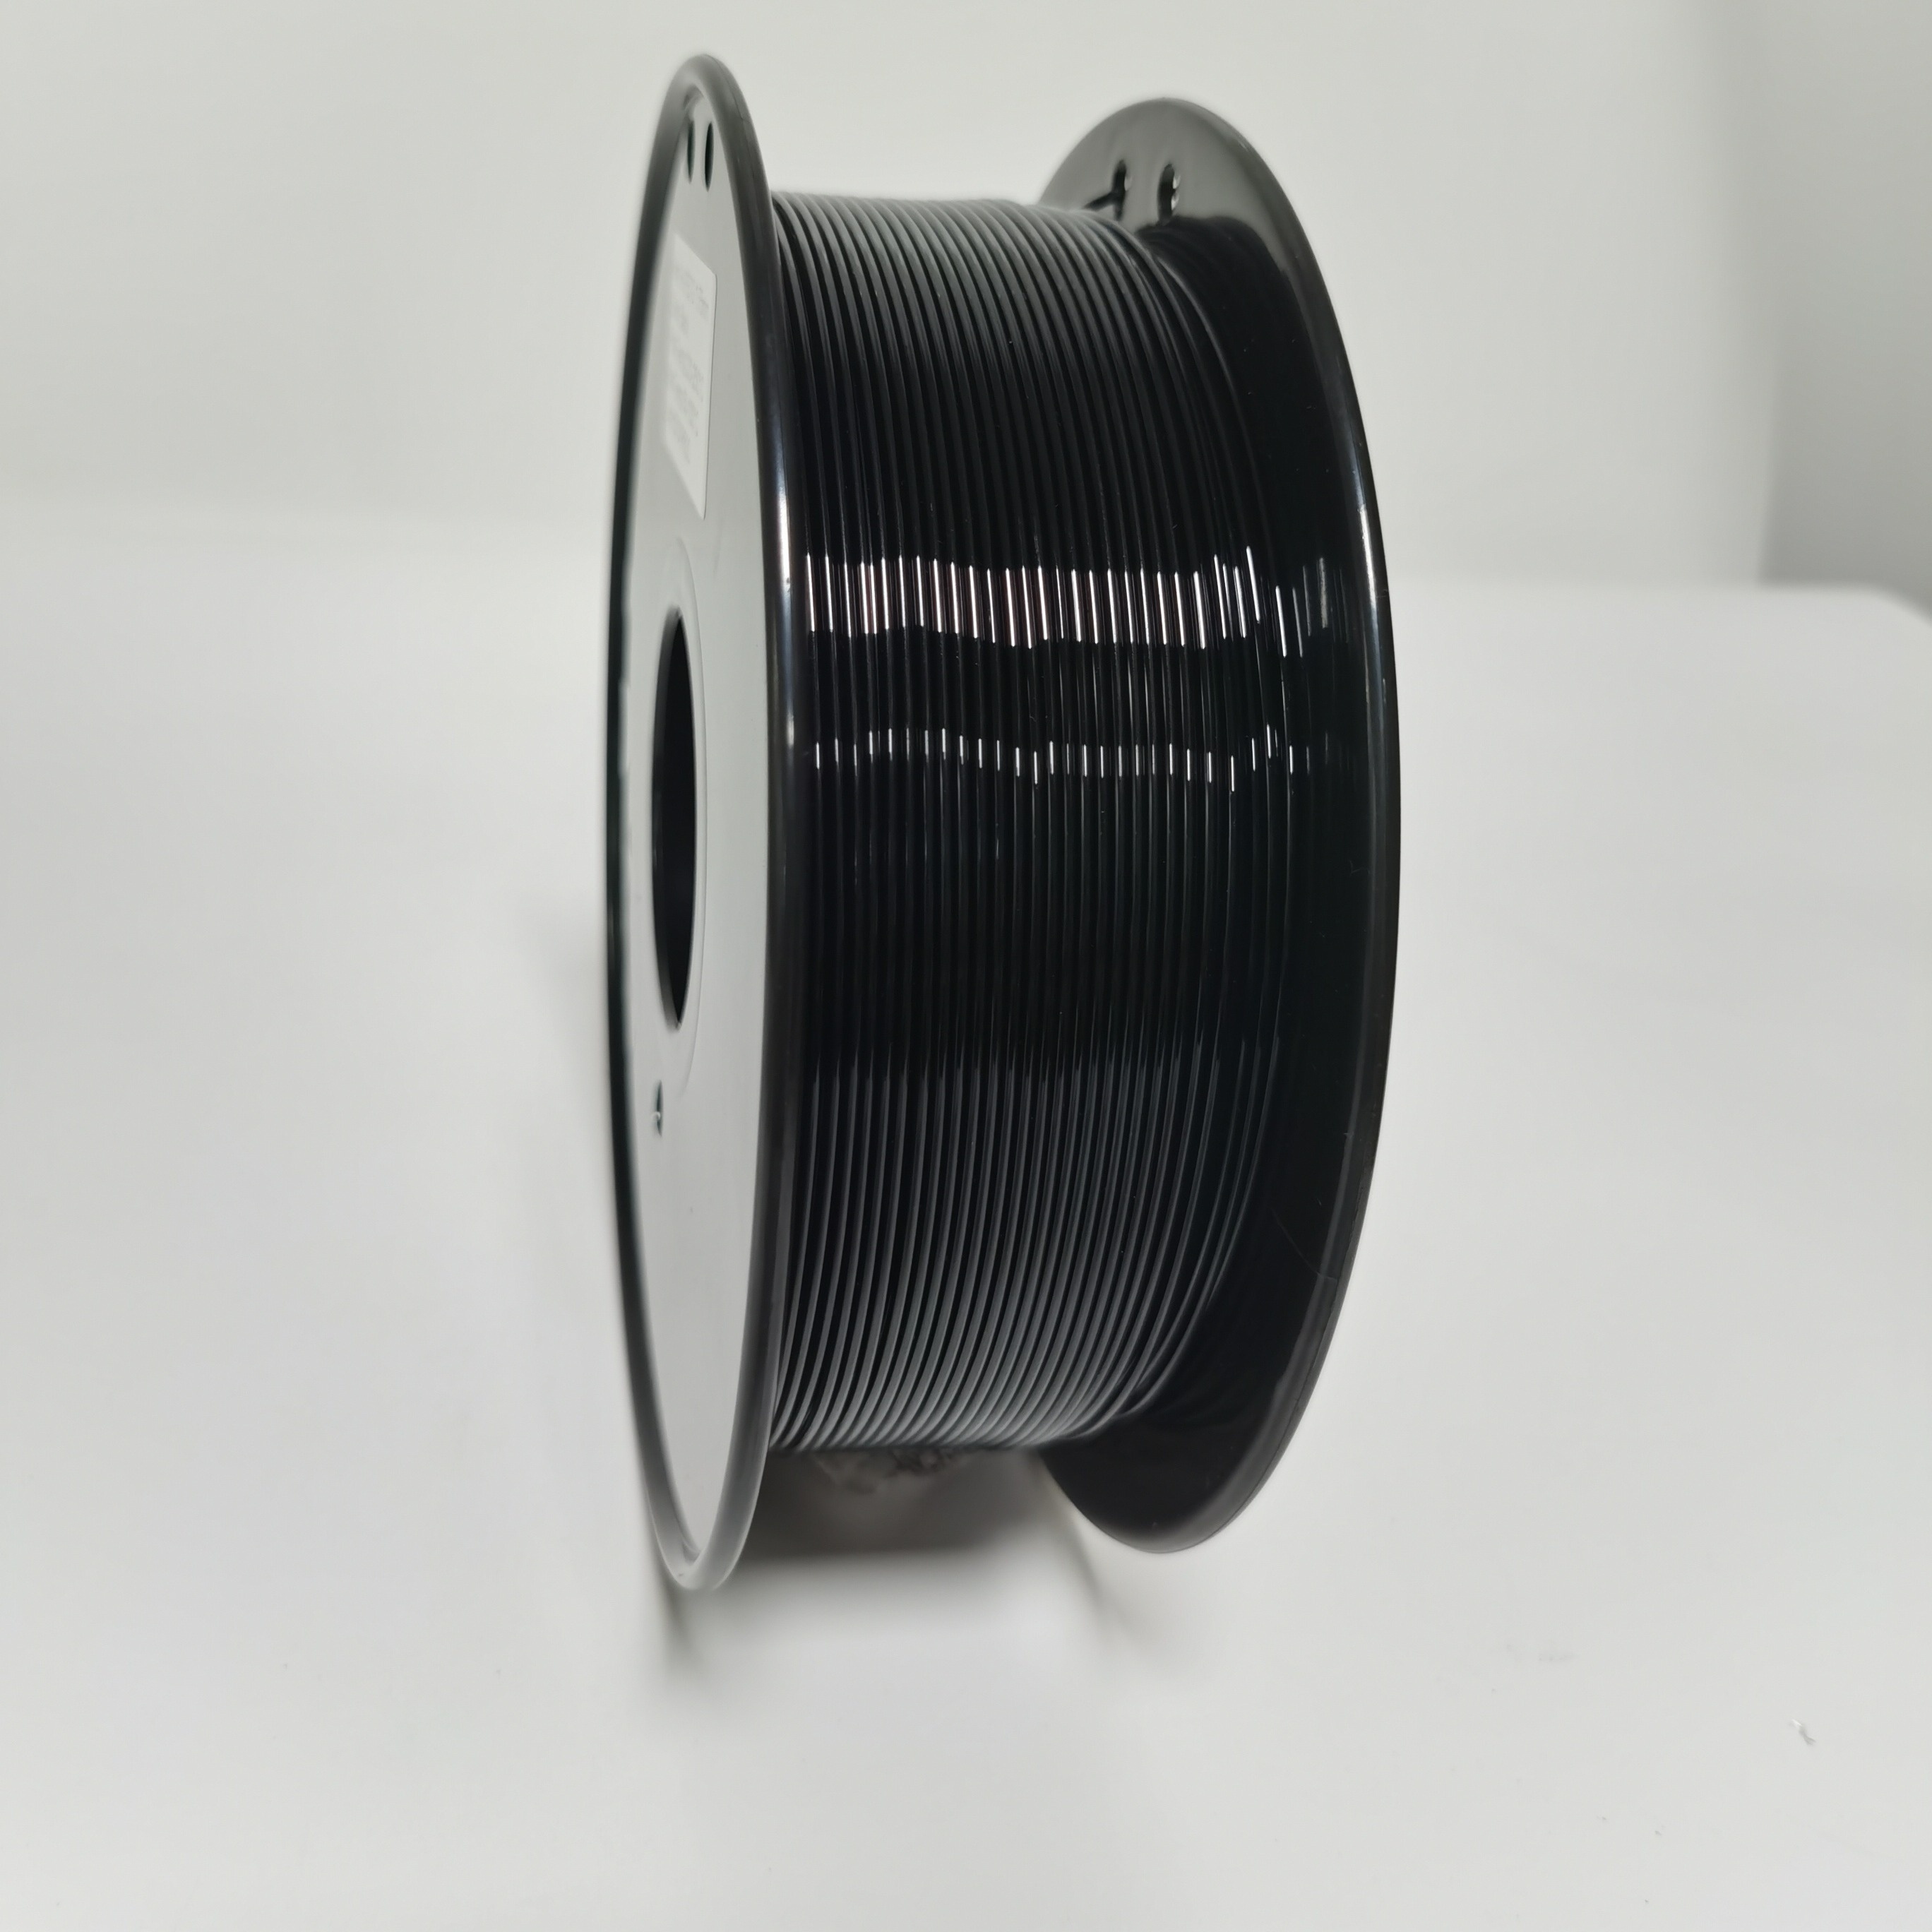 Petg 3d Printer Filament Sunlu Strong Petg Filament Neatly - Temu